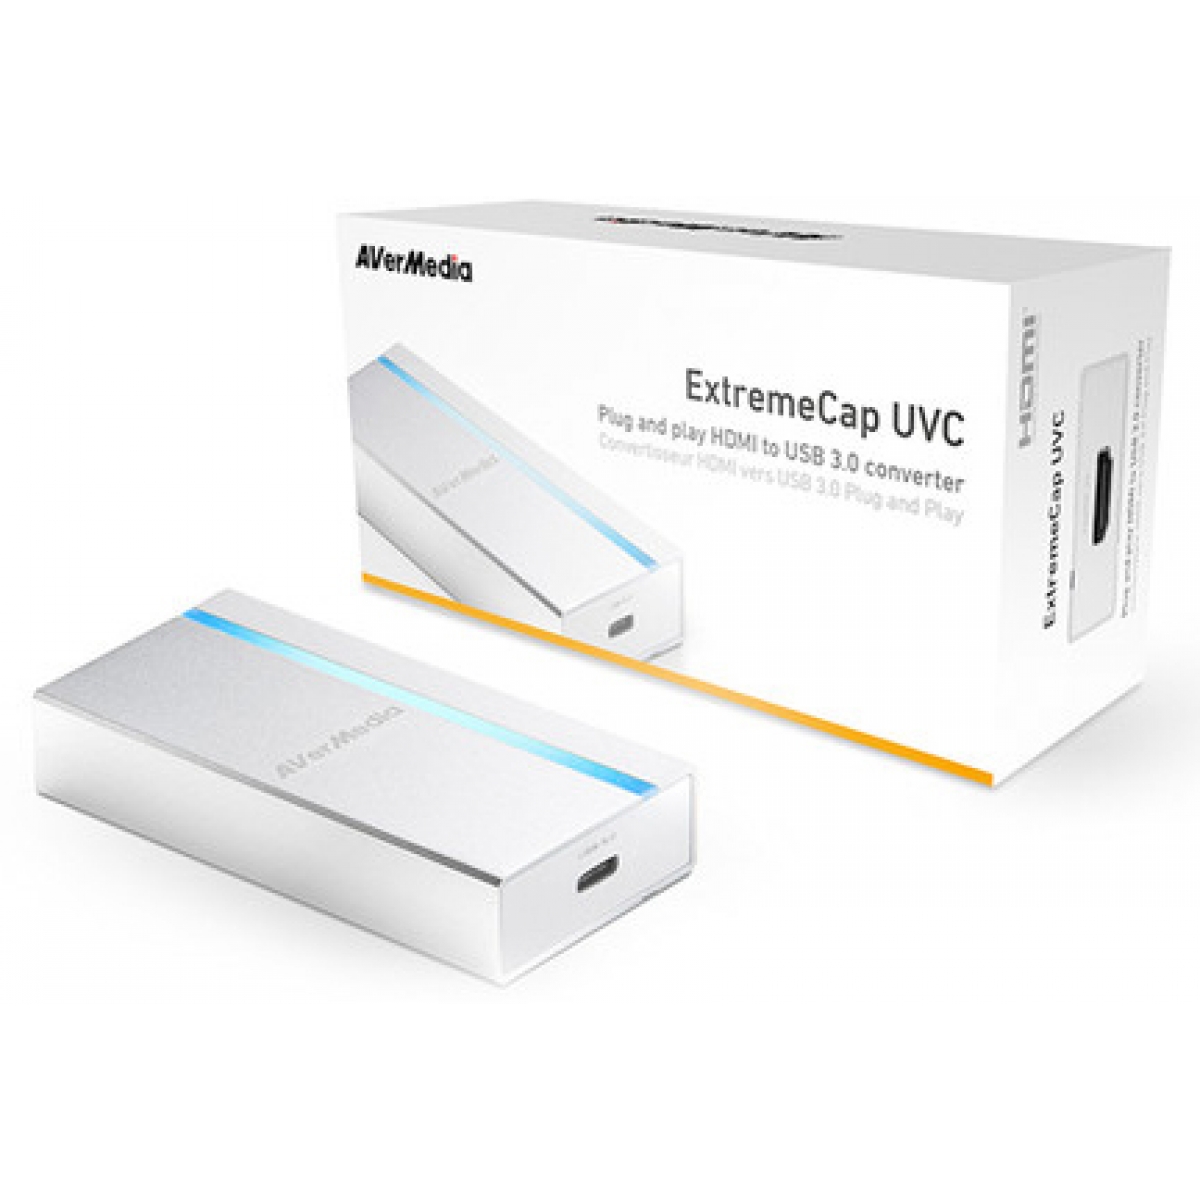 Placa de Captura Avermedia ExtremeCap UVC BU110 HDMI USB 3.0